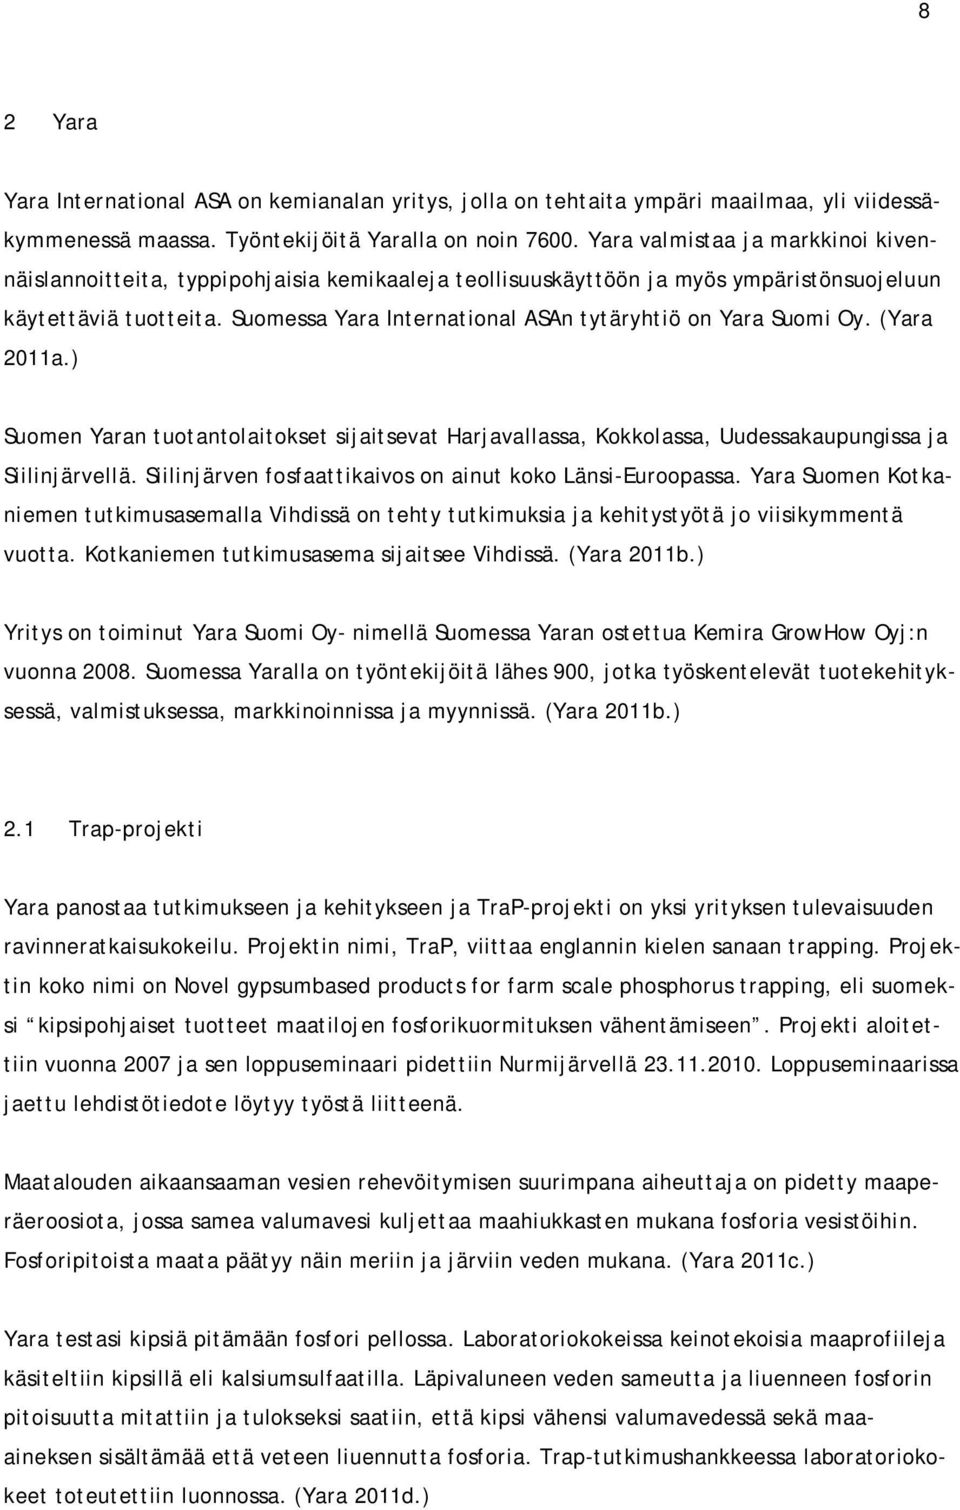 Suomessa Yara International ASAn tytäryhtiö on Yara Suomi Oy. (Yara 2011a.) Suomen Yaran tuotantolaitokset sijaitsevat Harjavallassa, Kokkolassa, Uudessakaupungissa ja Siilinjärvellä.